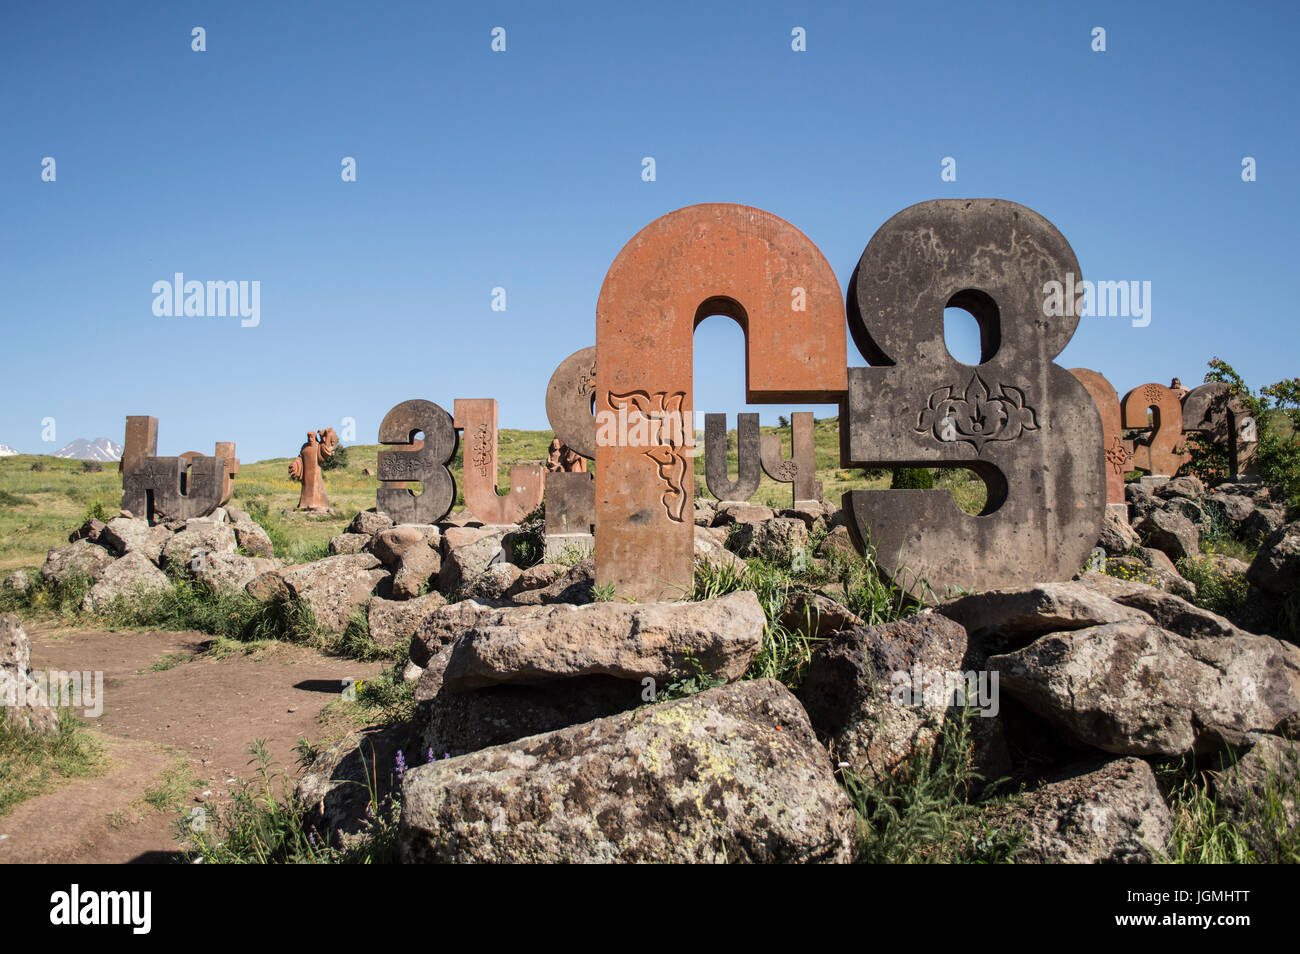 Armenische Alphabet Buchstaben - armenische Alphabet Denkmal, Armenien - 2. Juli 2017 Stockfoto